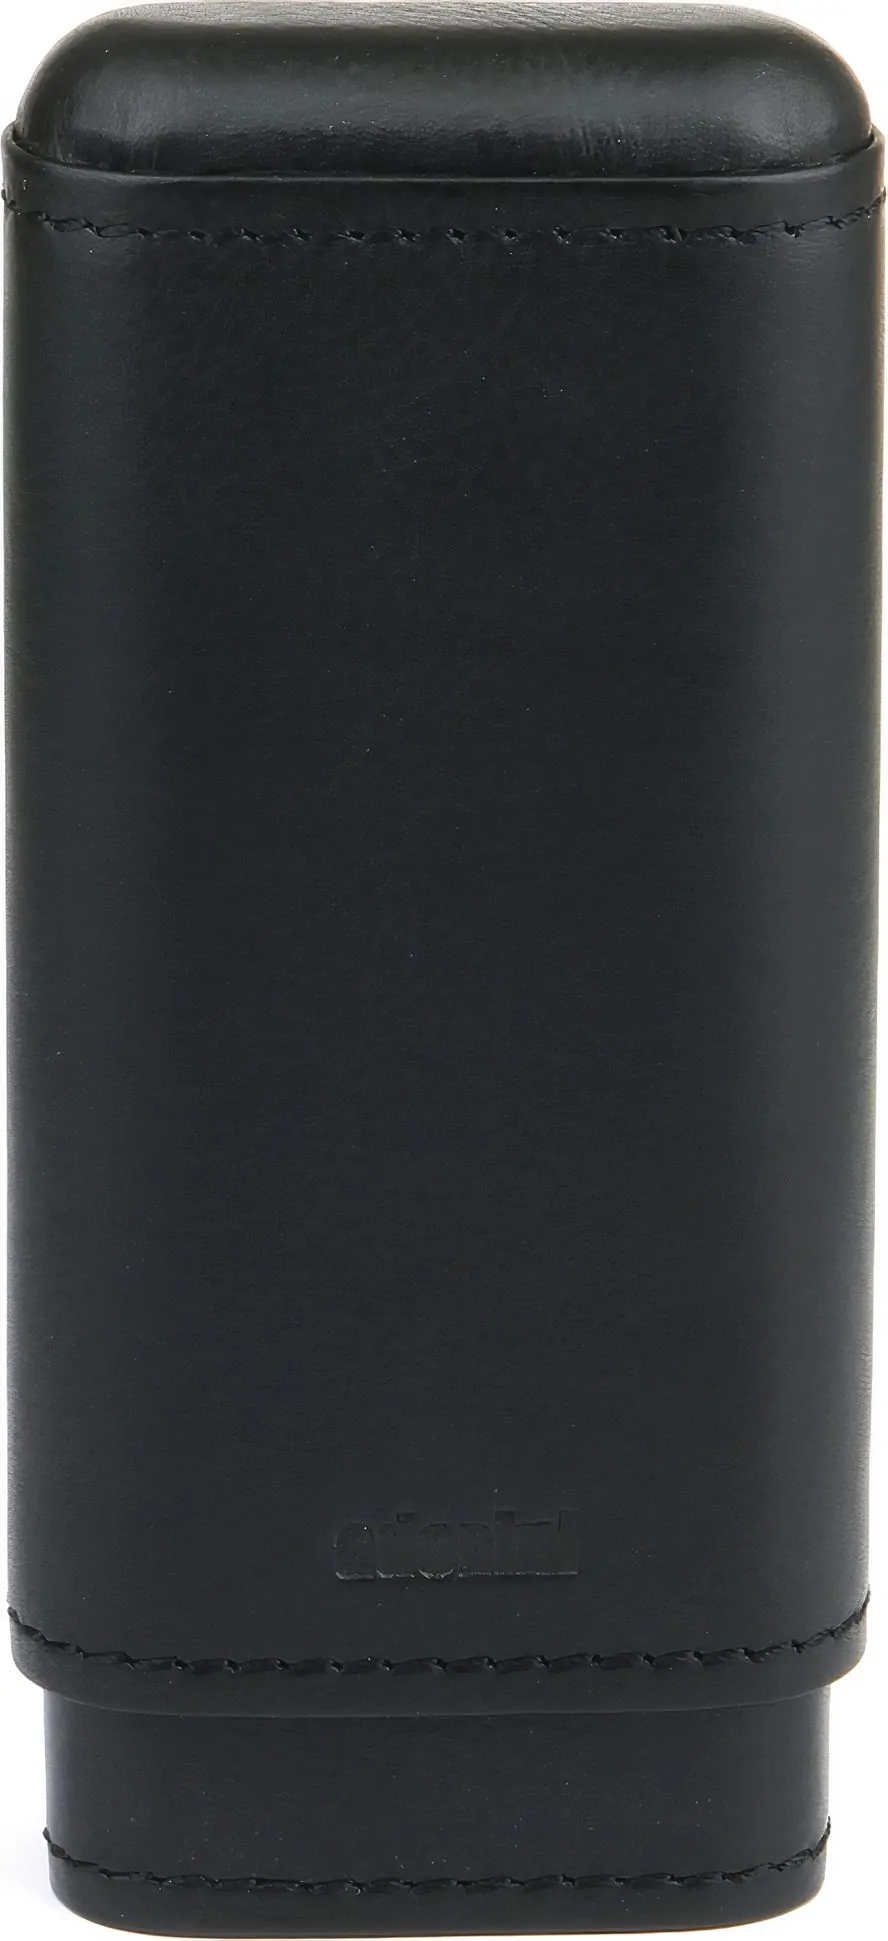 アドリニ本革シガーケース 葉巻2本用 ブラック | 104 レビュー | 最低価格でオンライン購入